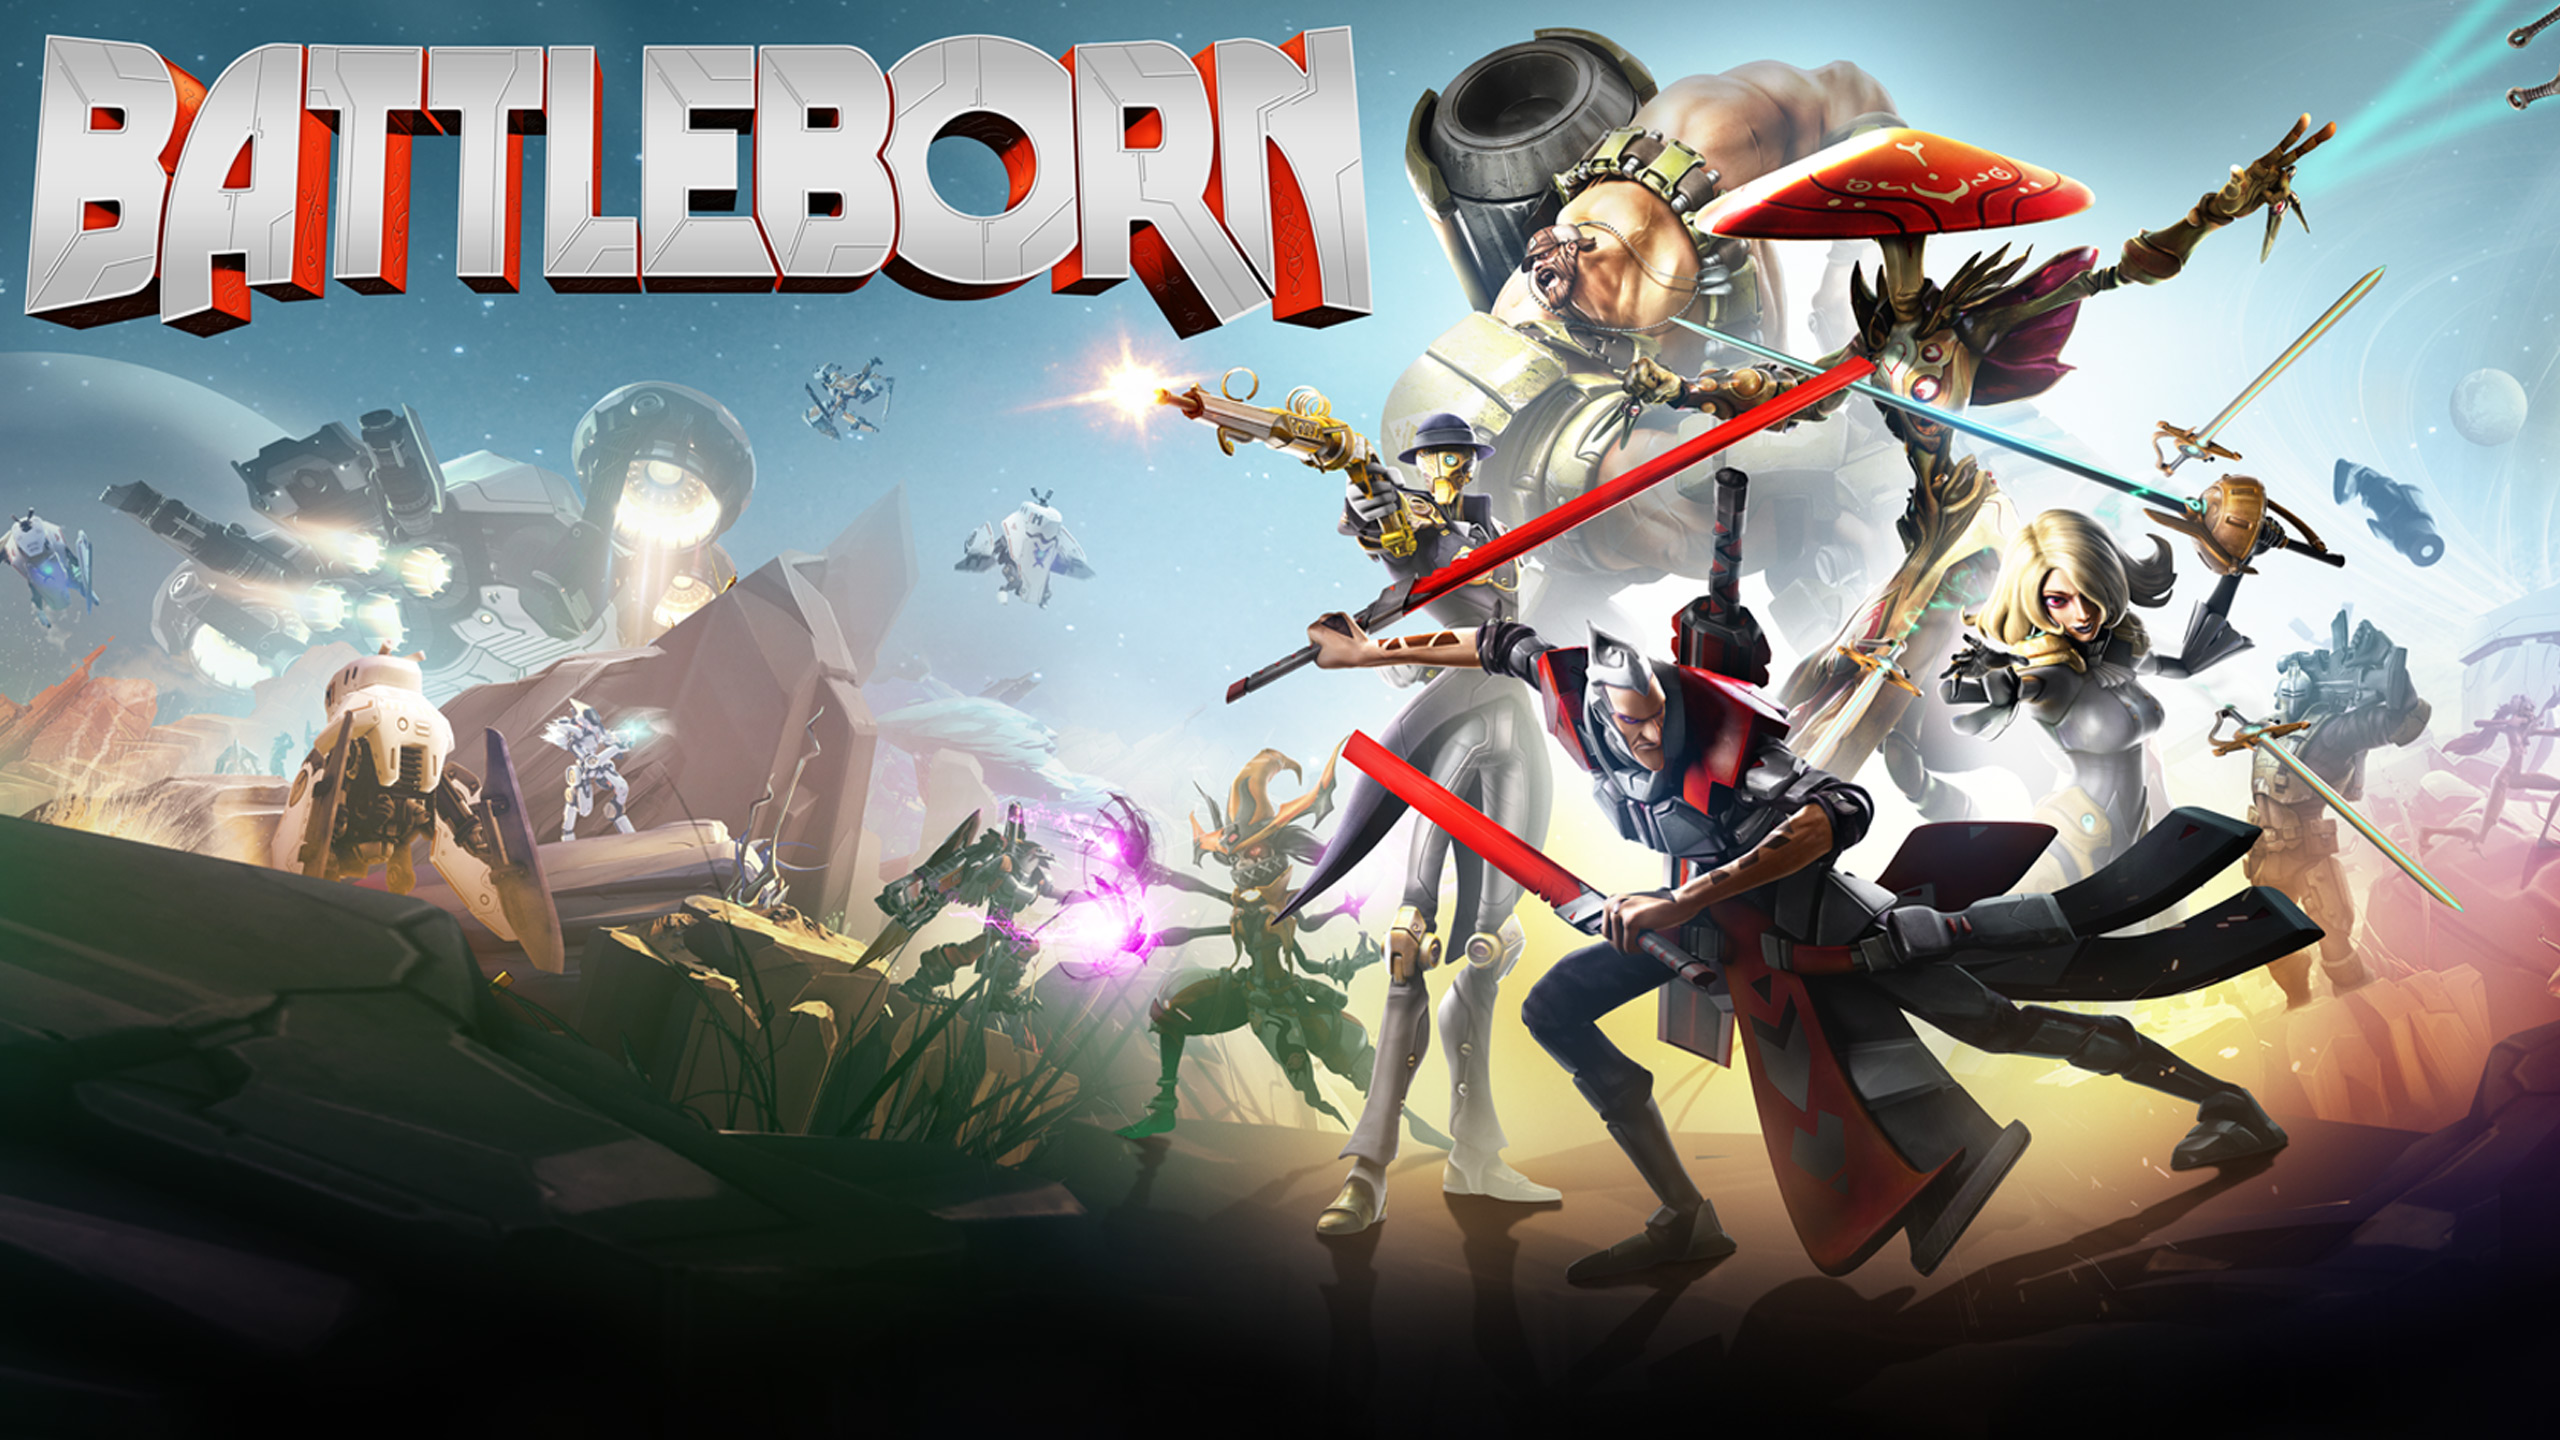 Battleborn Hd Wallpaper - Battleborn Xbox One Cover , HD Wallpaper & Backgrounds